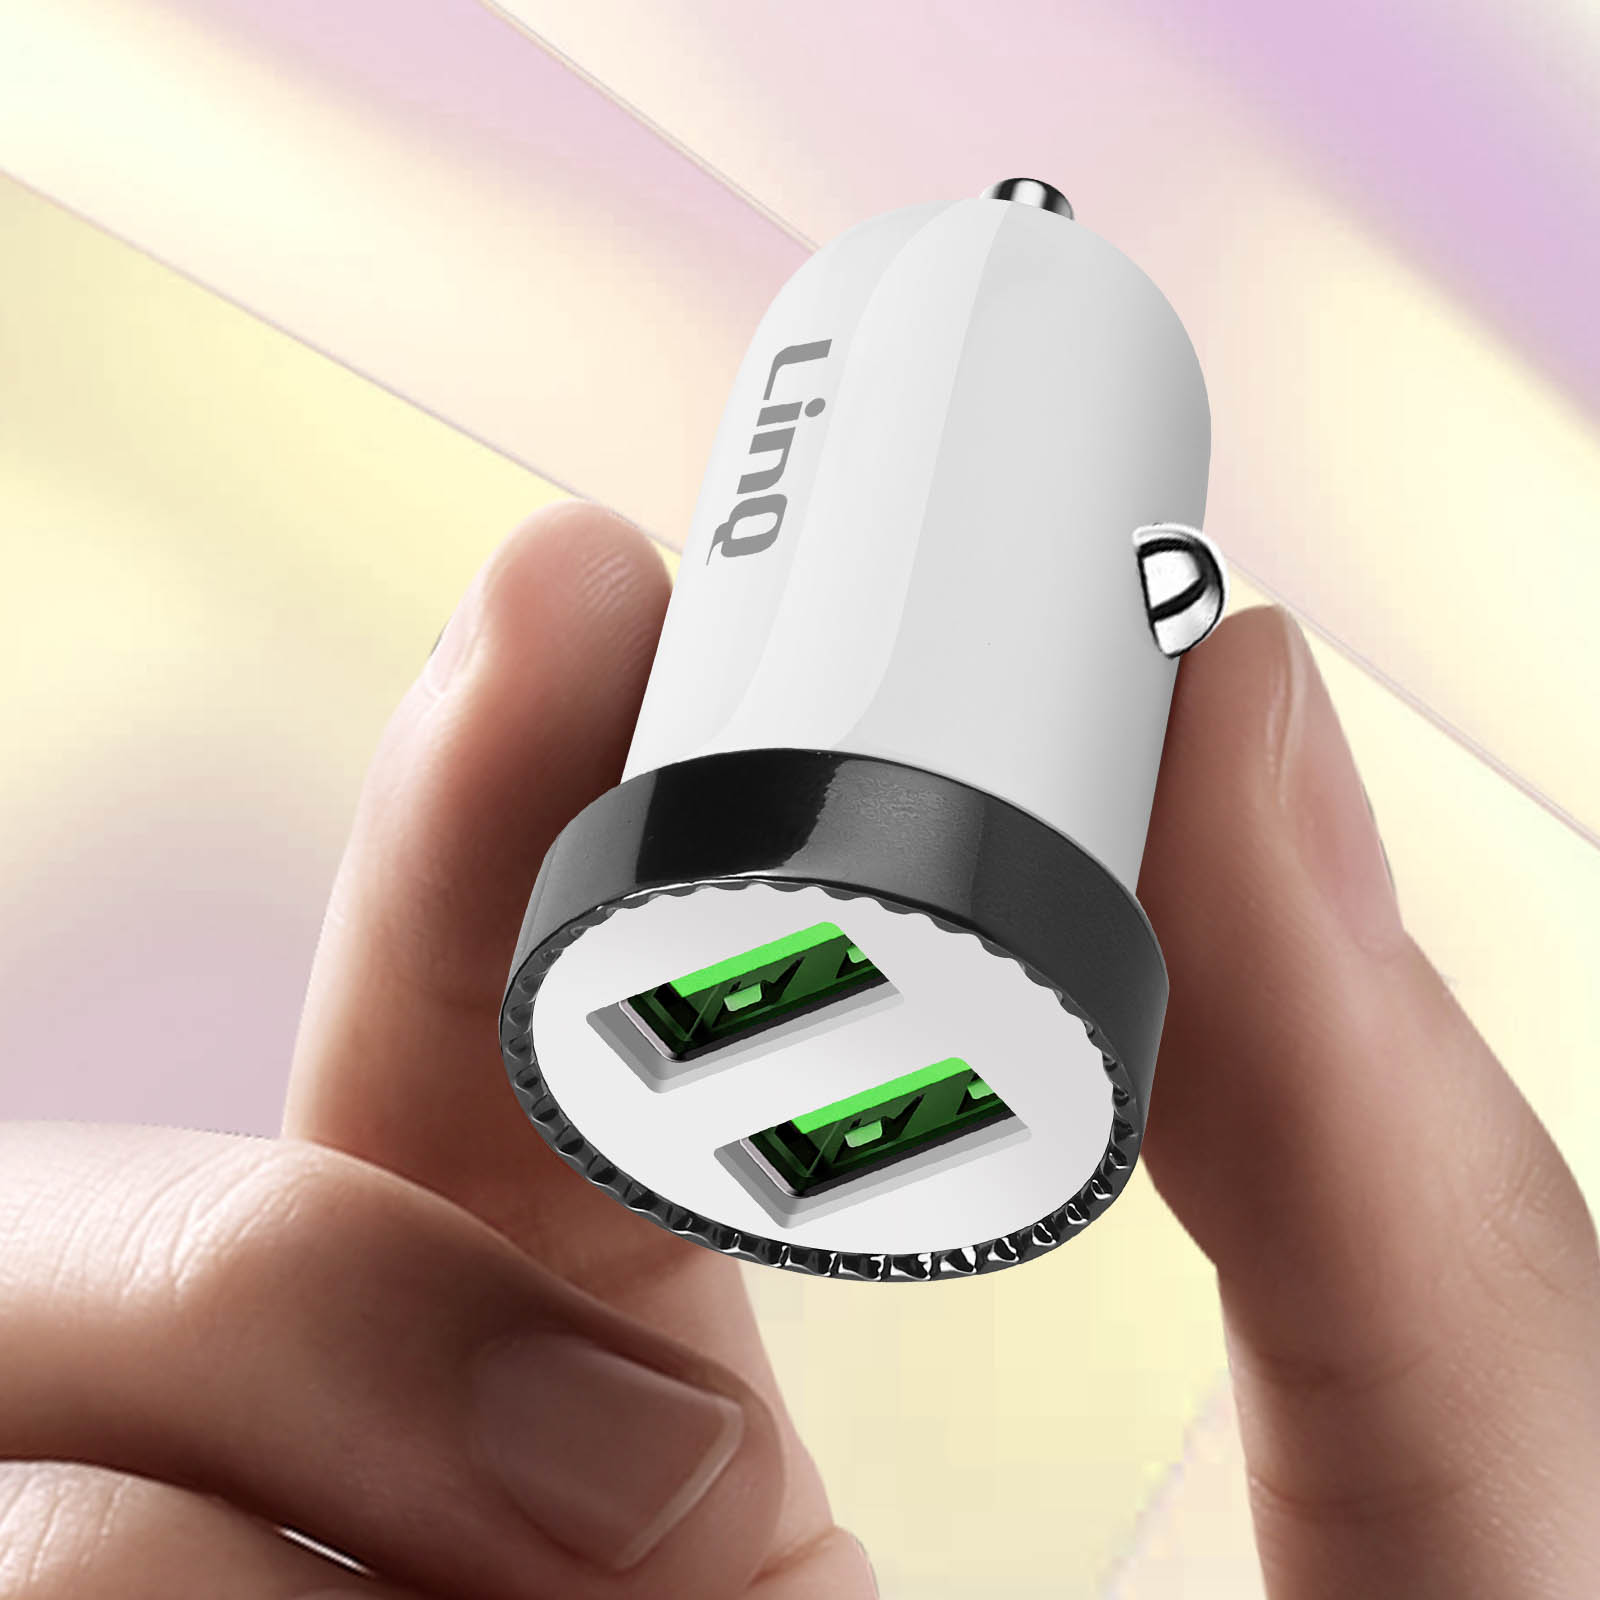 Chargeur Voiture Double USB Quick Charge 2.4A, LinQ - Blanc - Français